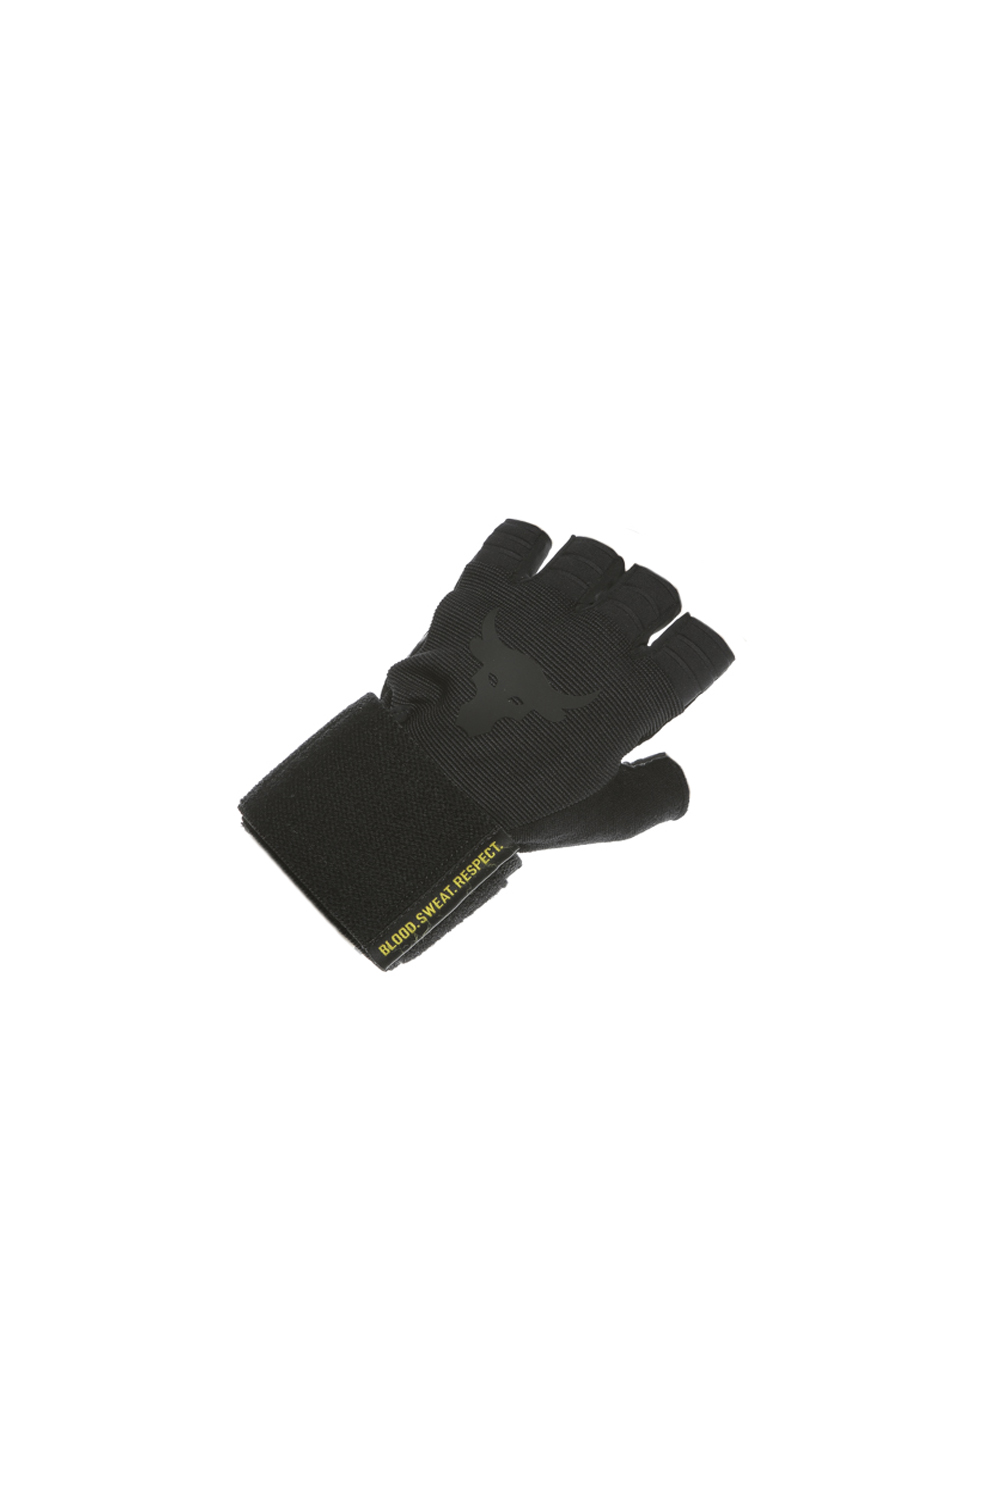 Ανδρικά/Αξεσουάρ/Αθλητικά Είδη/Εξοπλισμός UNDER ARMOUR - Ανδρικά γάντια προπόνησης UNDER ARMOUR Project Rock Training Glove μαύρα